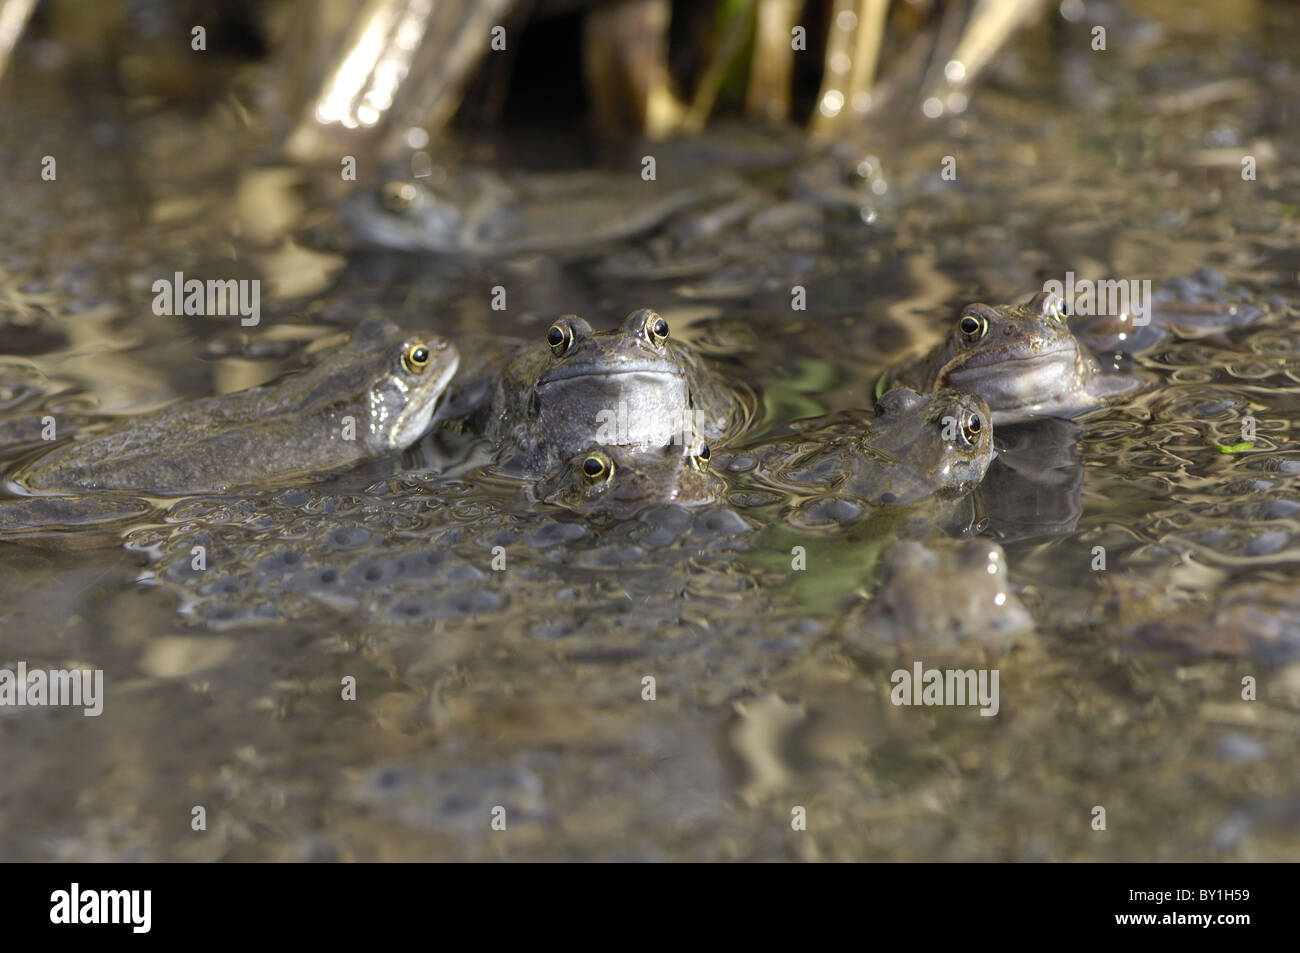 Rana comune (Rana temporaria) gruppo di maschi femmine in attesa in corrispondenza della superficie dell'acqua tra i grappoli di uova Foto Stock